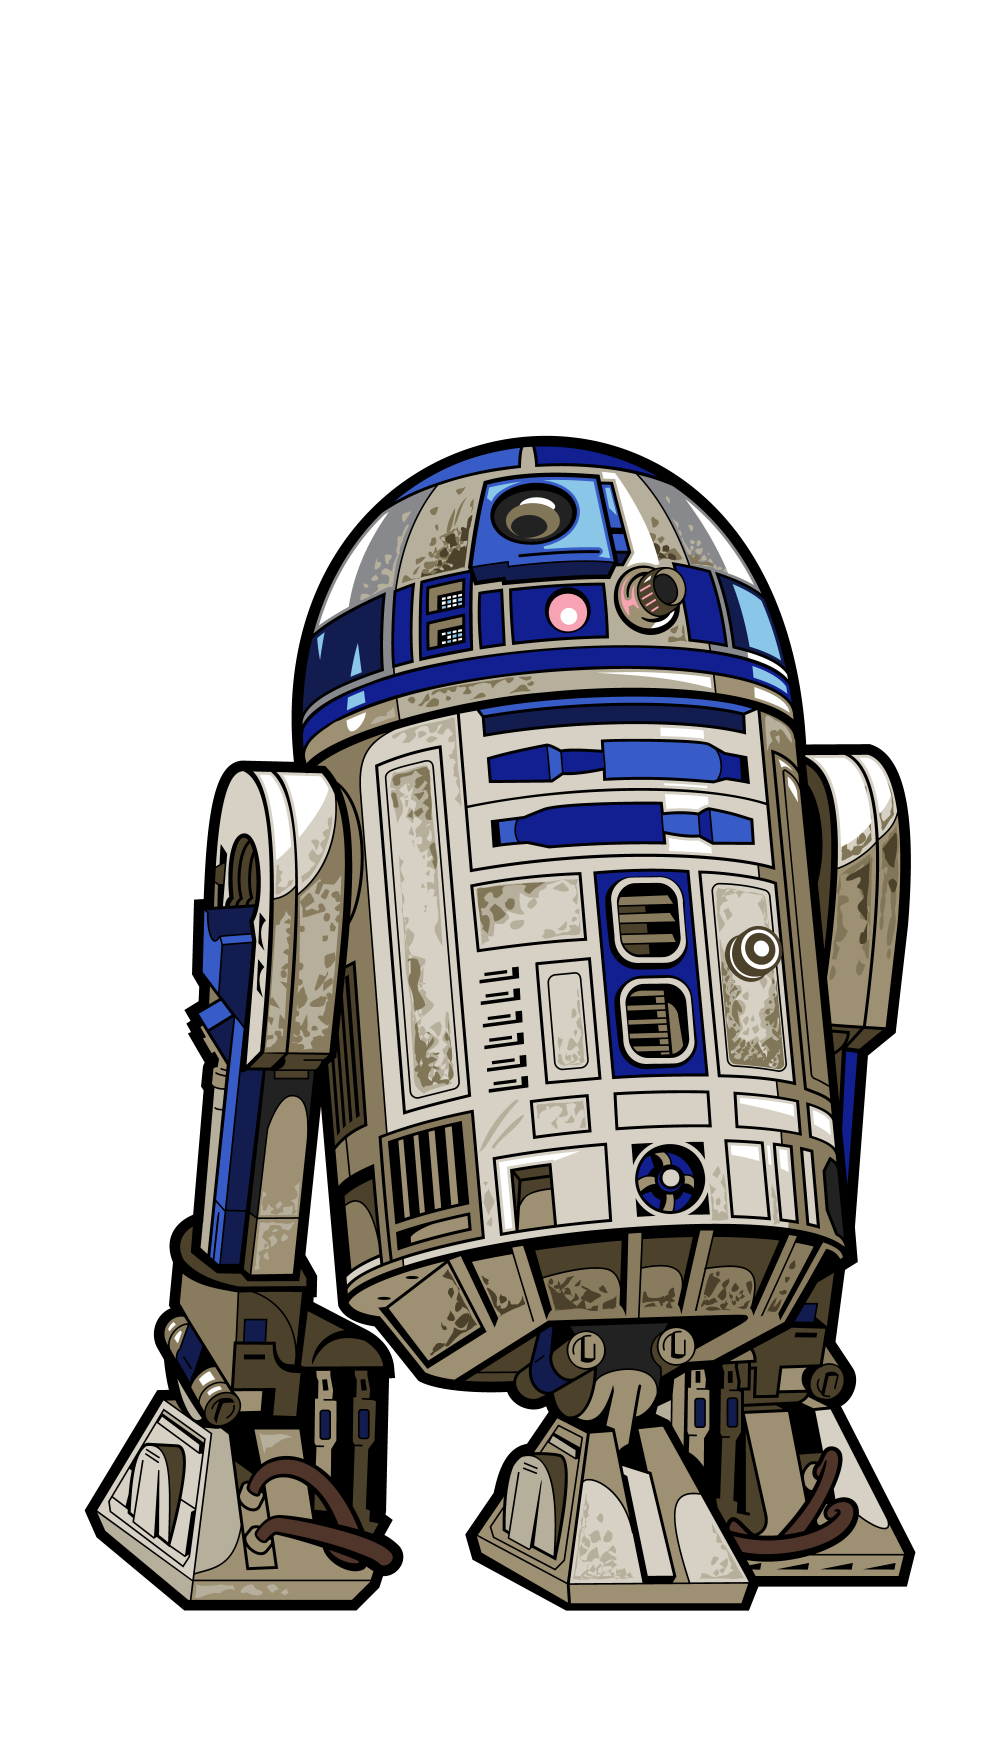 R2-D2 (784)